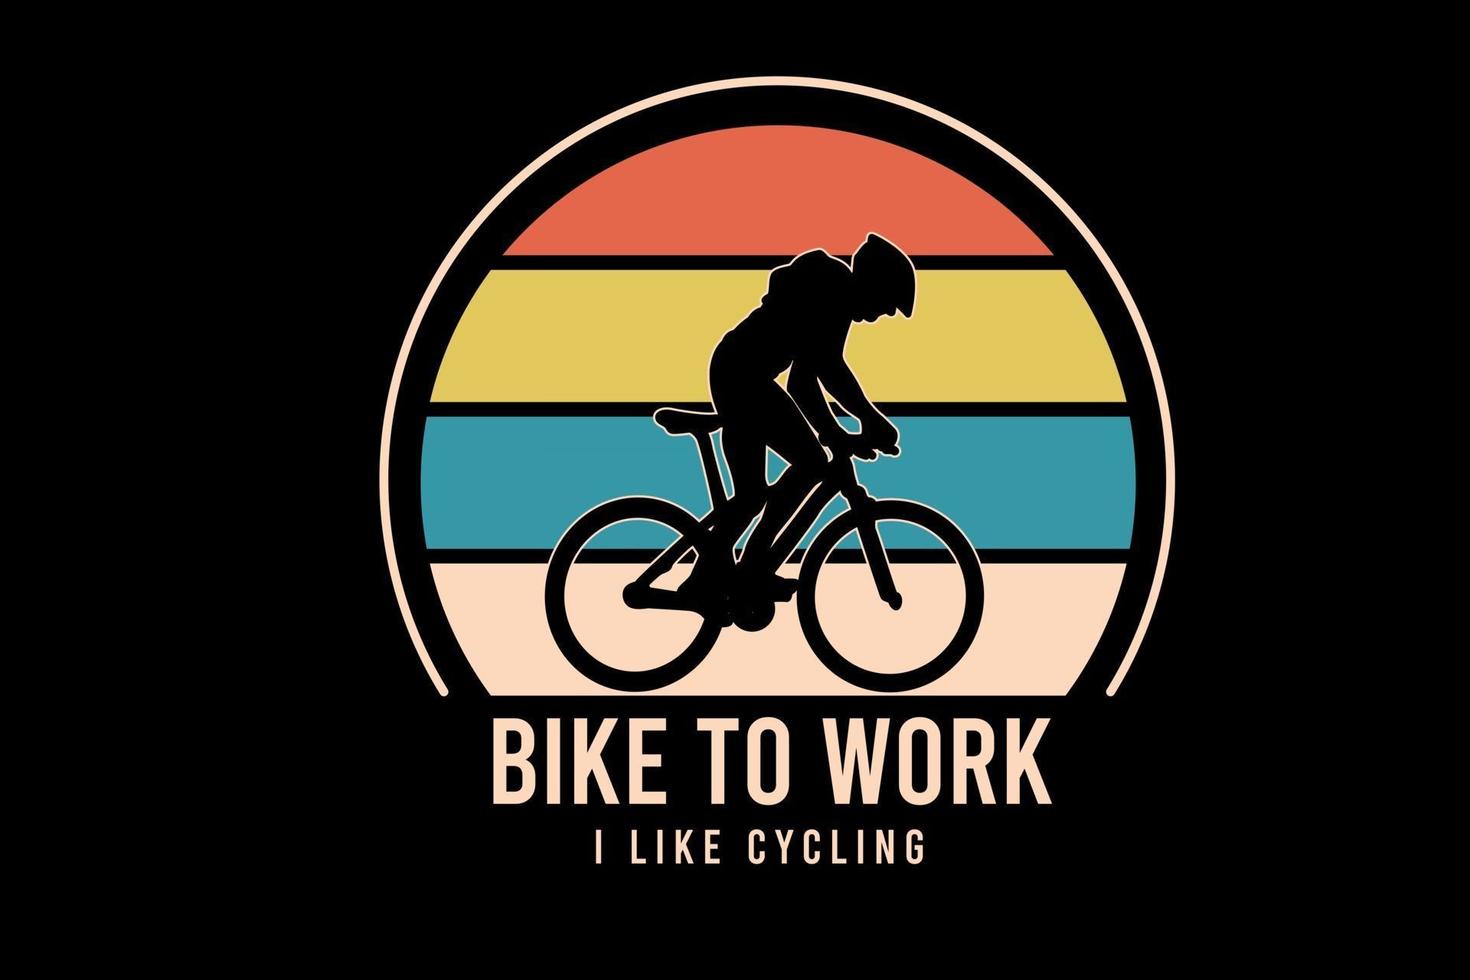 fahrrad zur arbeit ich fahre gerne farbe orange gelb und grün vektor